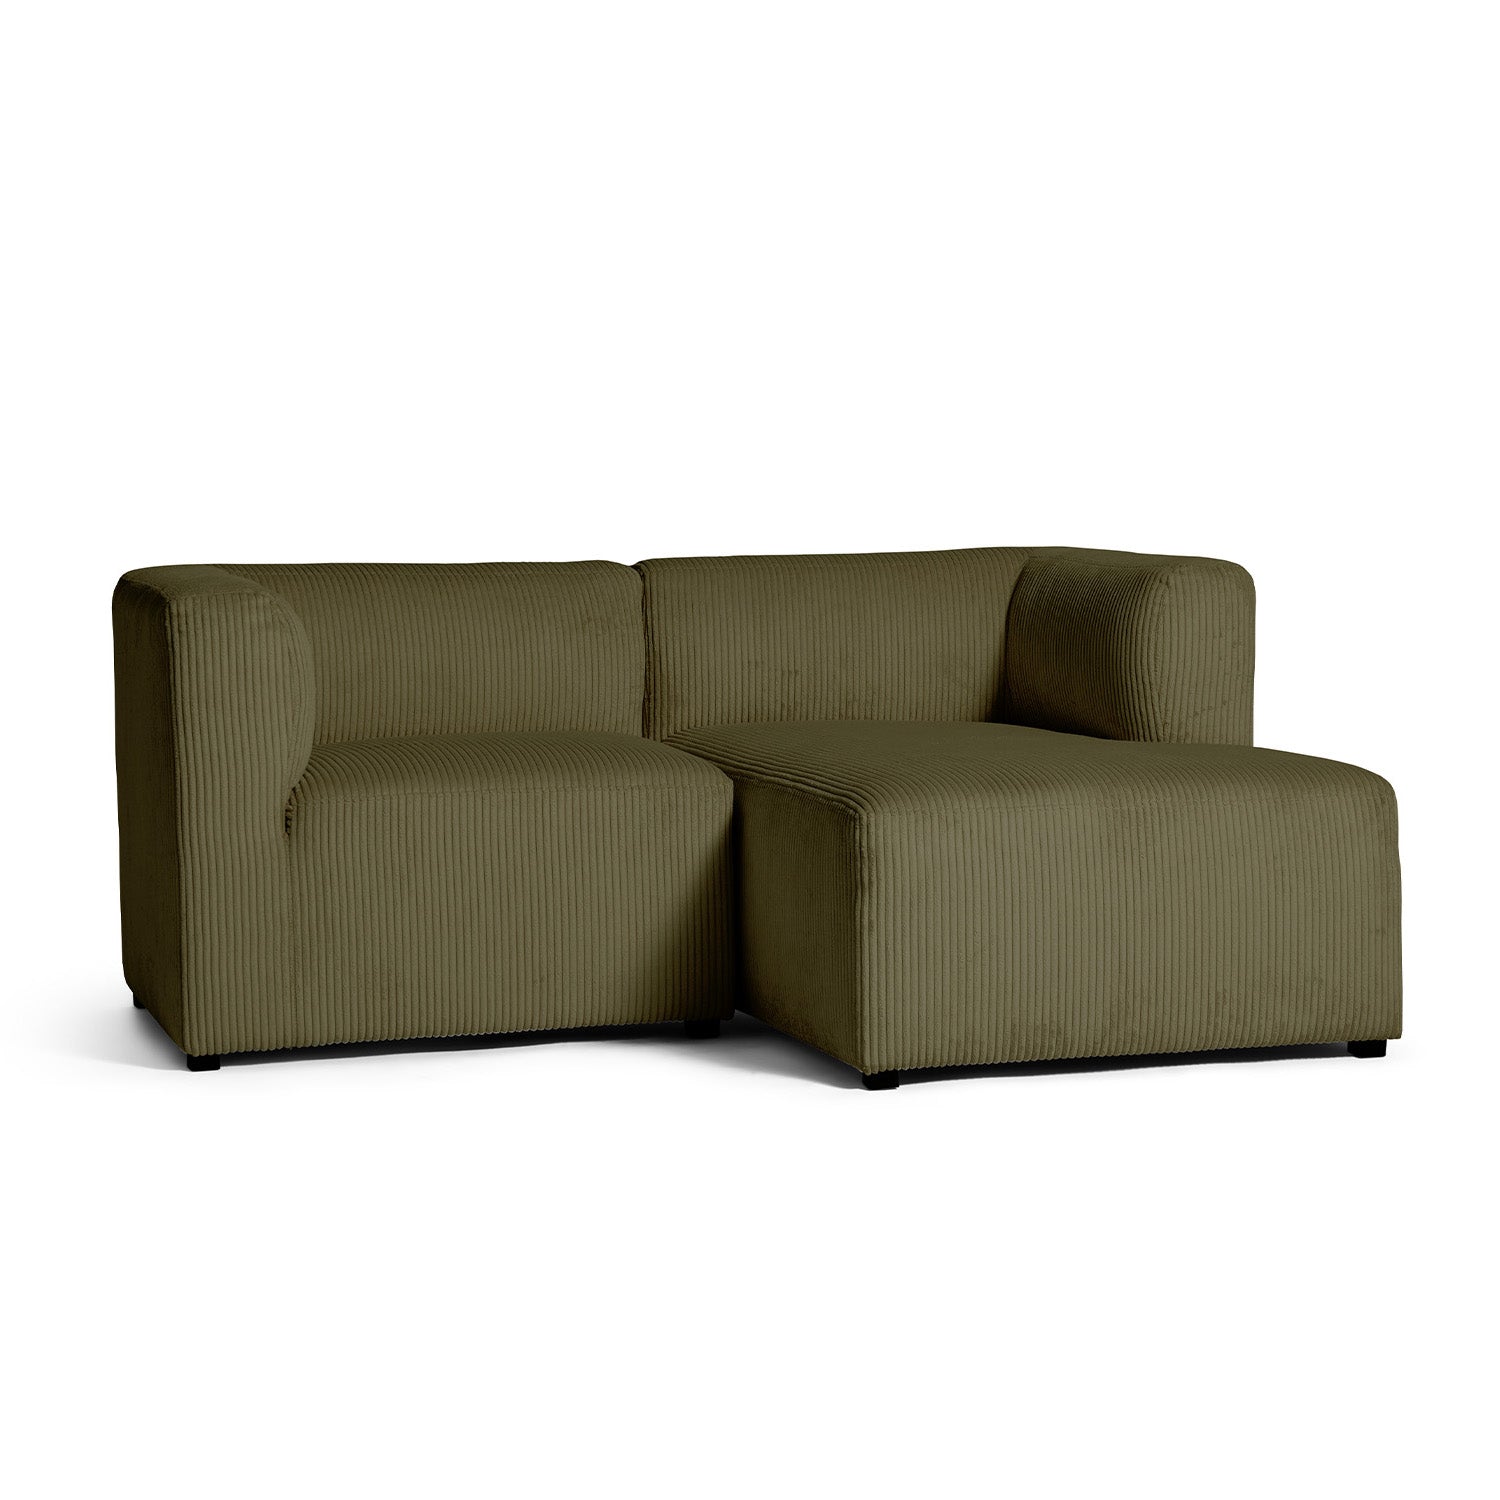 Roma lille chaiselong sofa højrevendt, fløjl - Møbelkompagniet